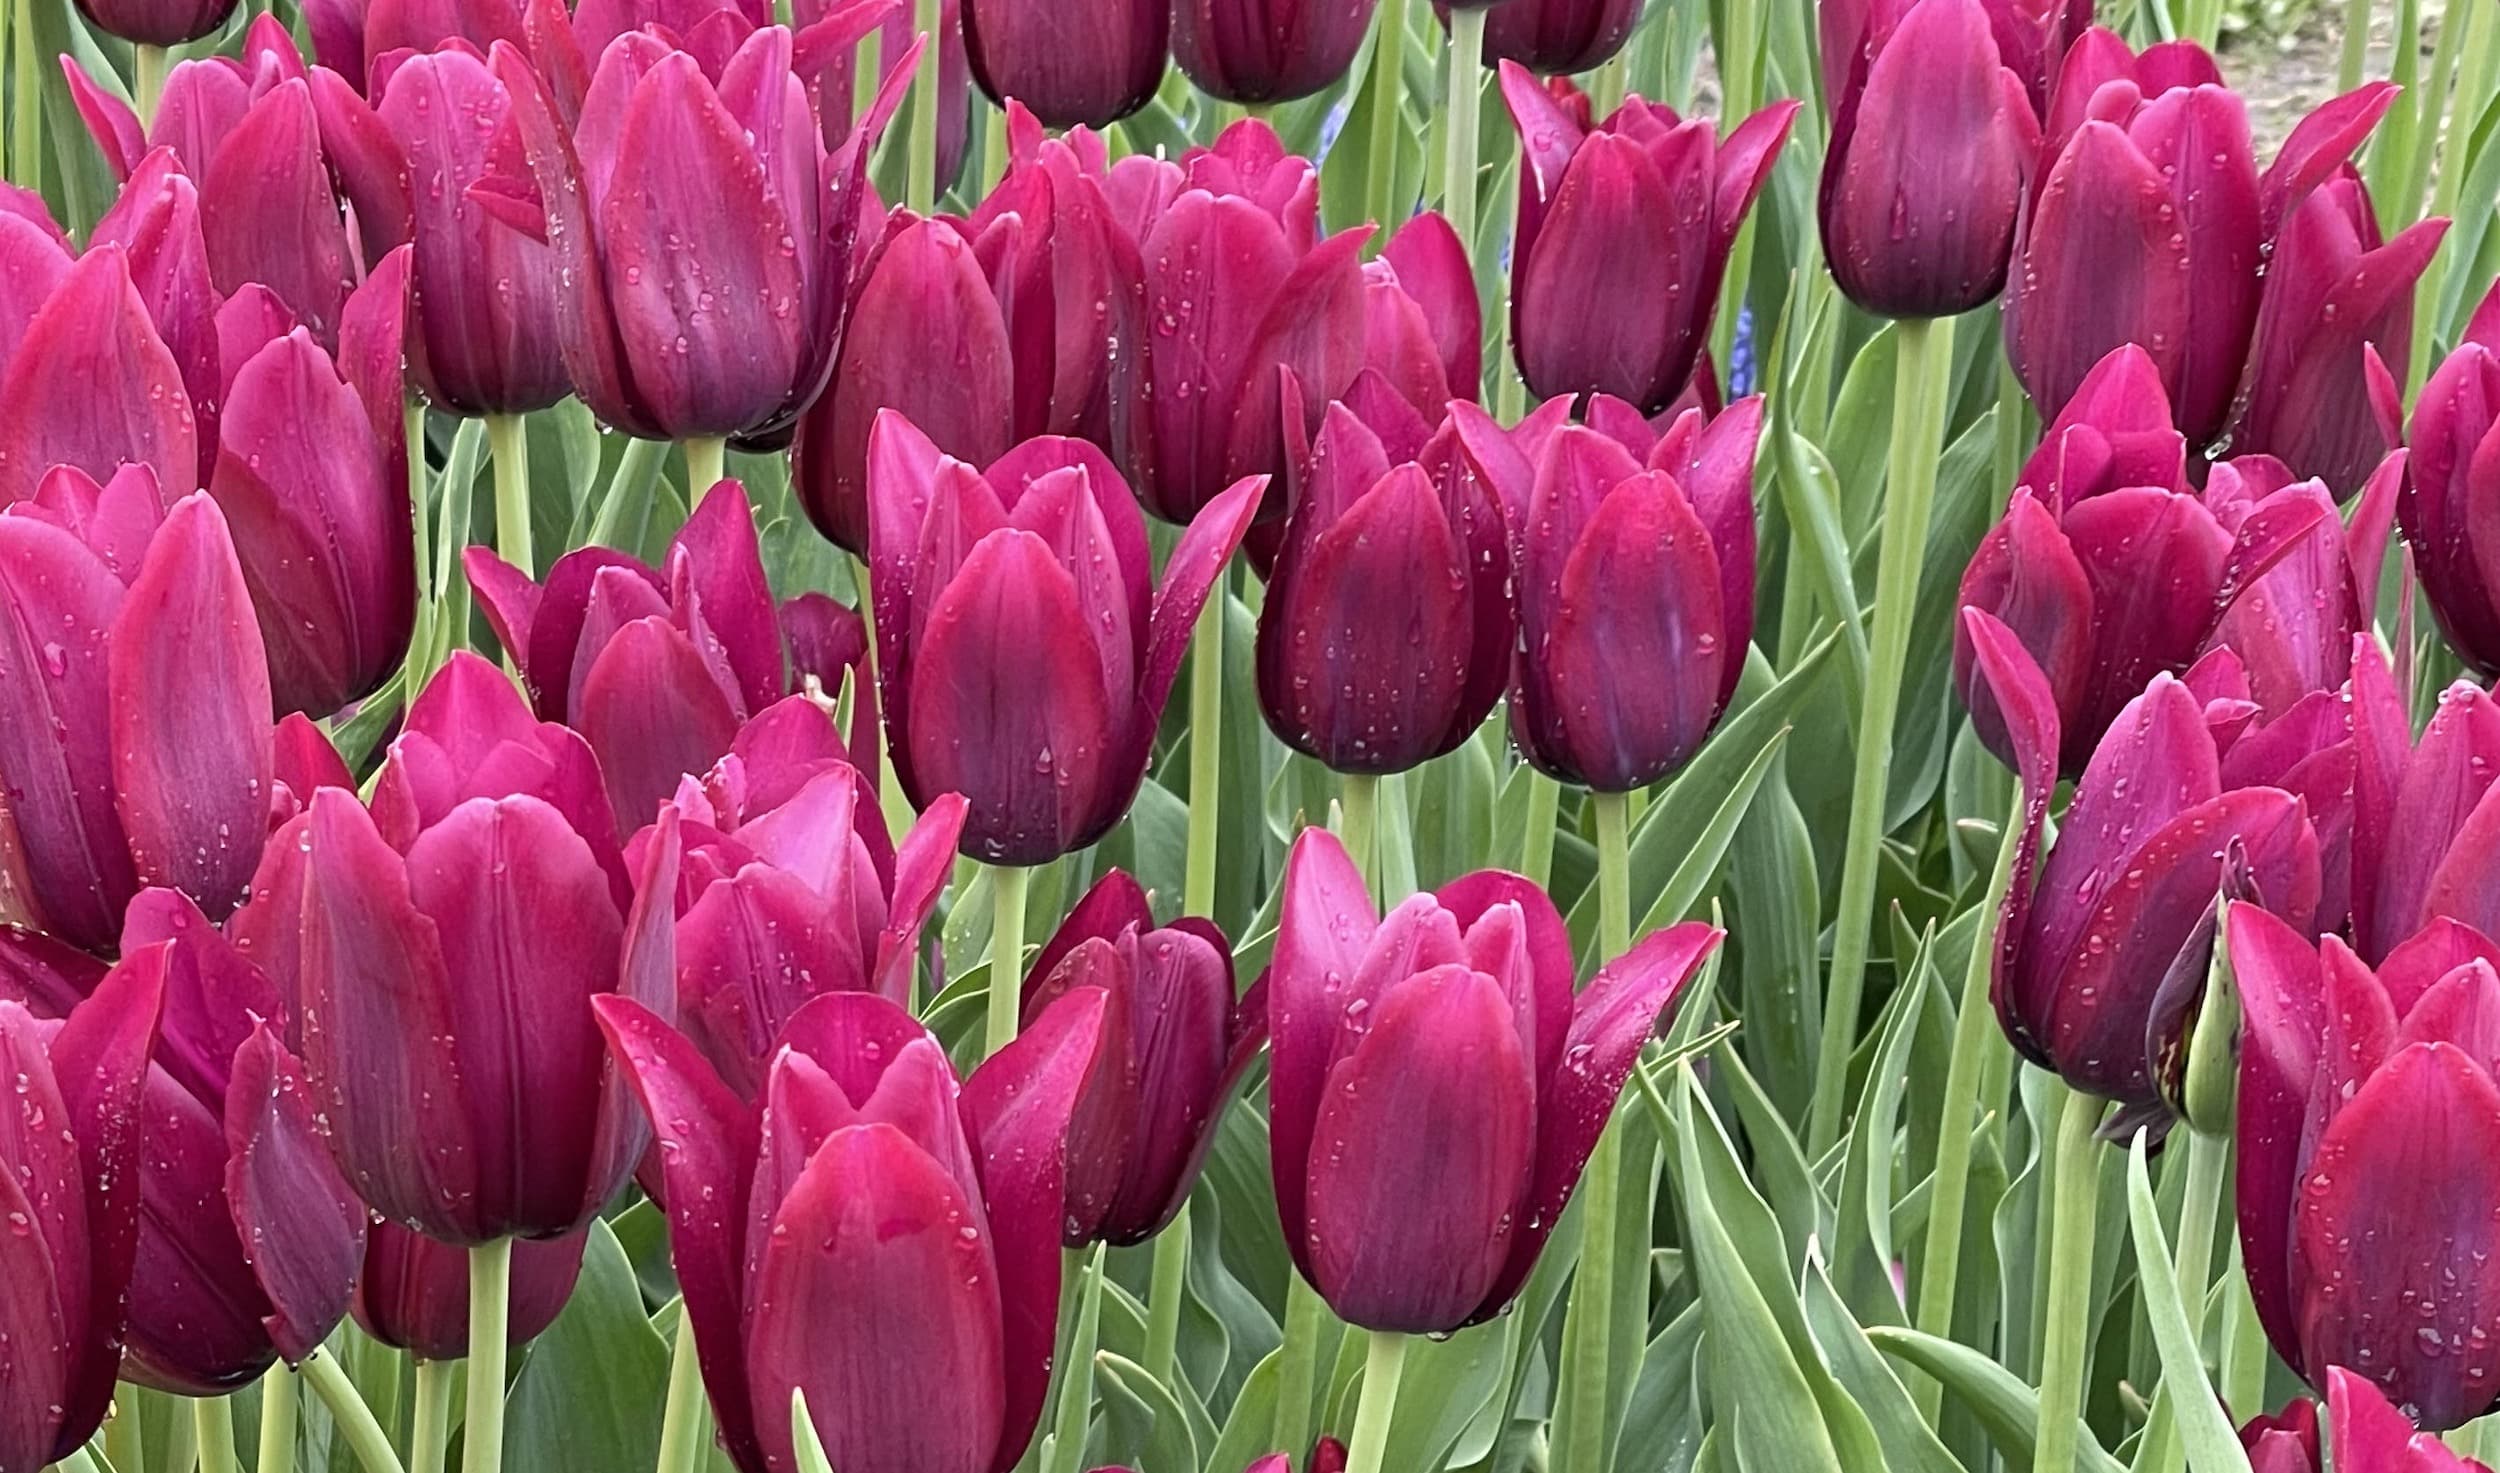 Tulips on display in Albany, NY